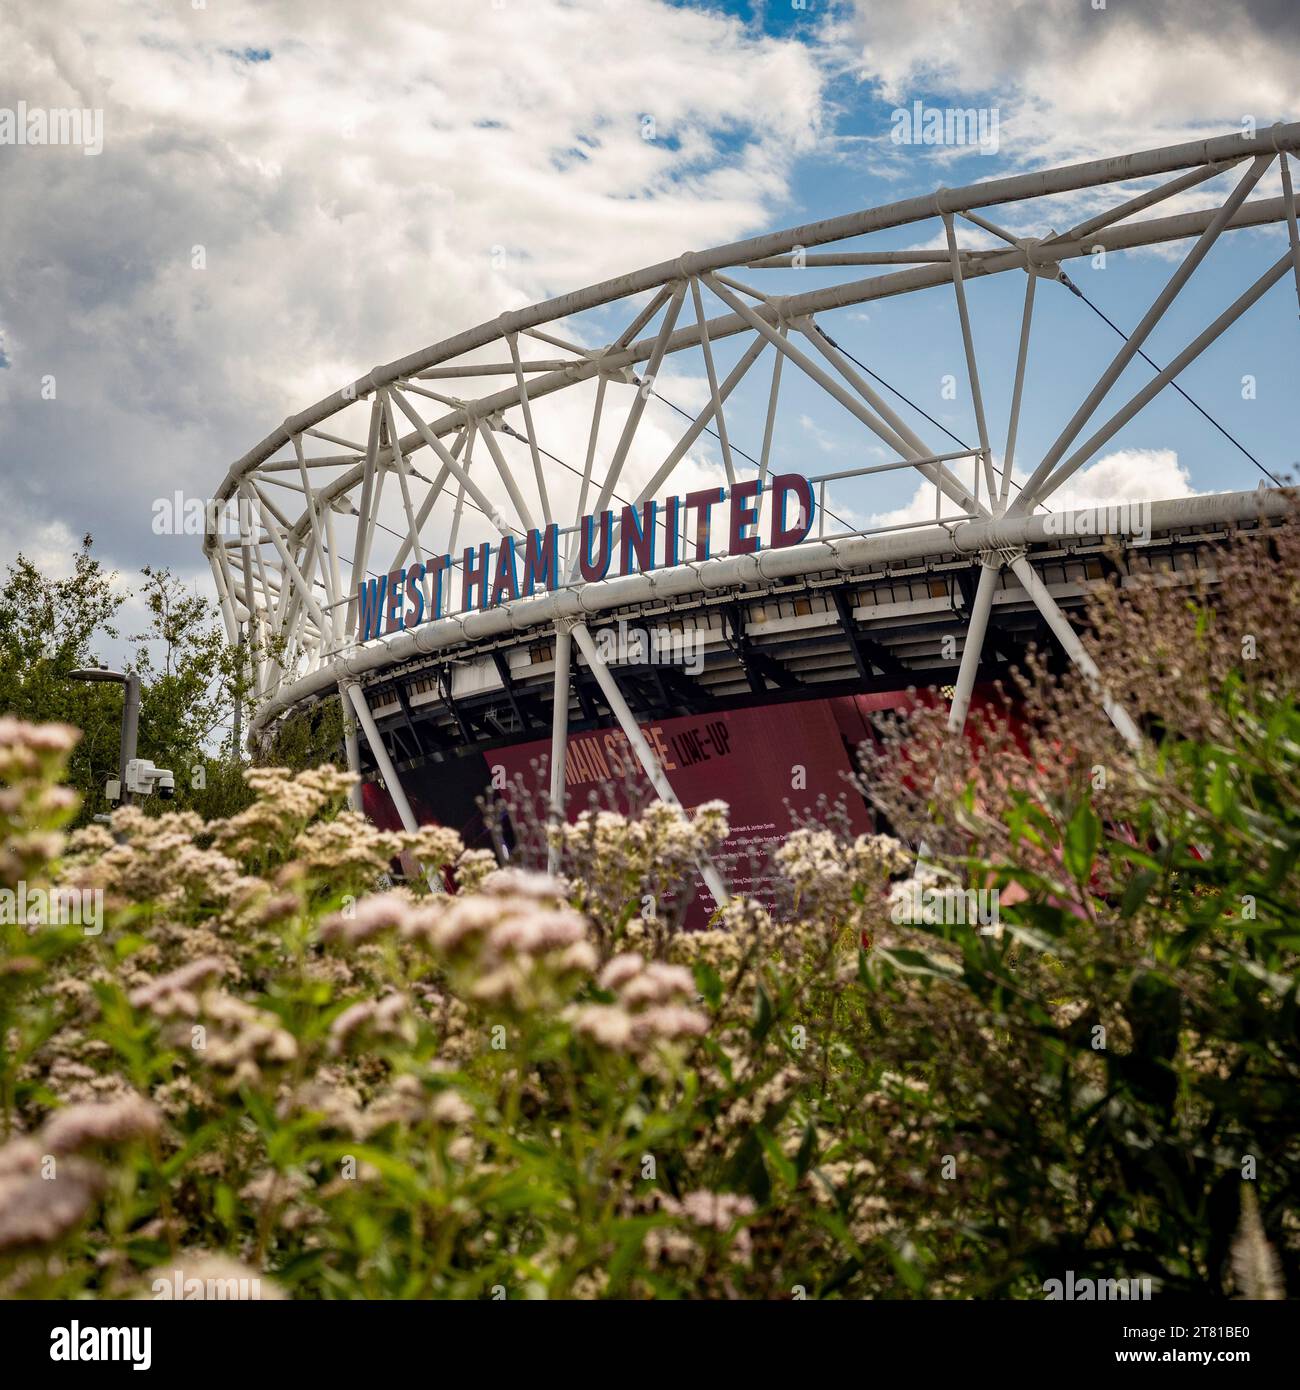 London Stadium, sede della squadra di calcio del West Ham United. Olympic Park, Stratford, Londra, Regno Unito. Foto Stock